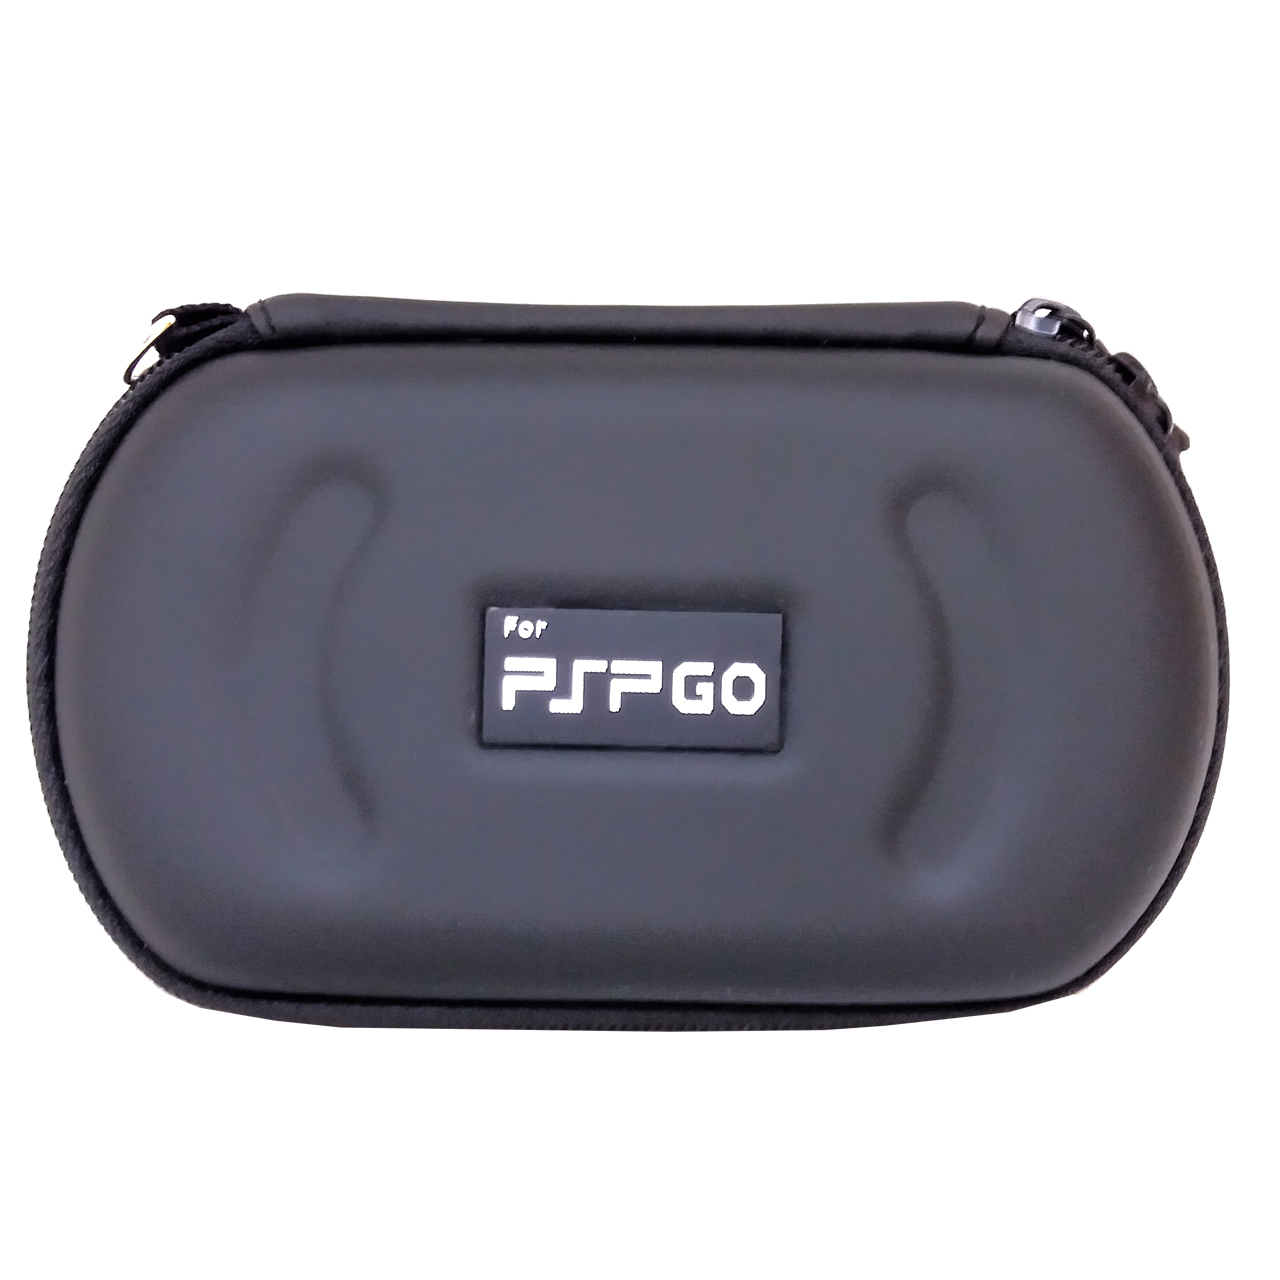 کیف حمل مناسب برای PSP Go طرح MK003